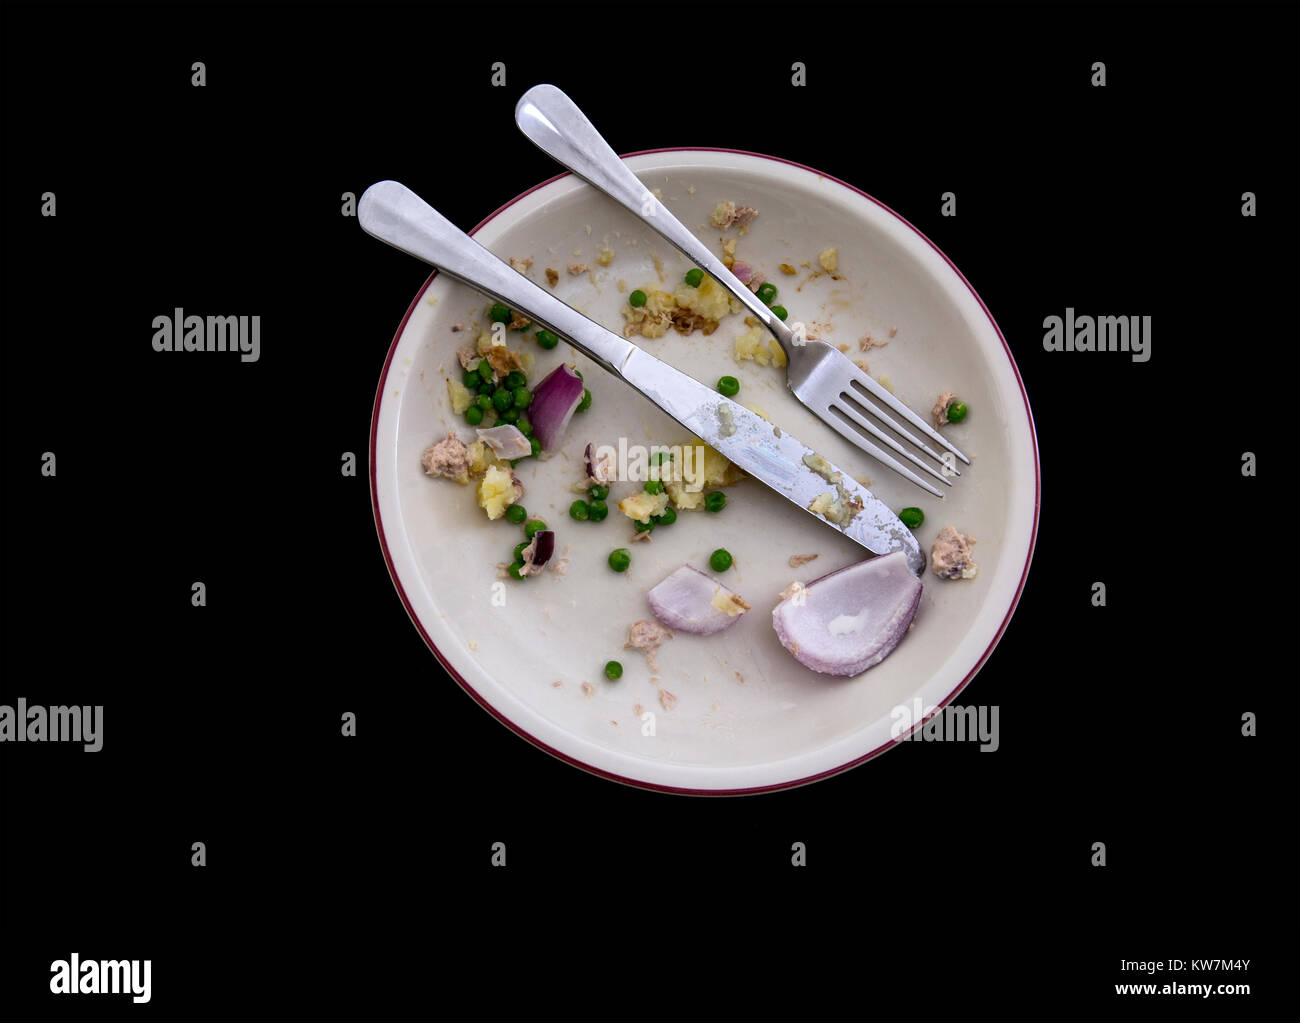 Scatto dall'alto di una piastra a vuoto con gli avanzi di un pasto su un backround nero Foto Stock